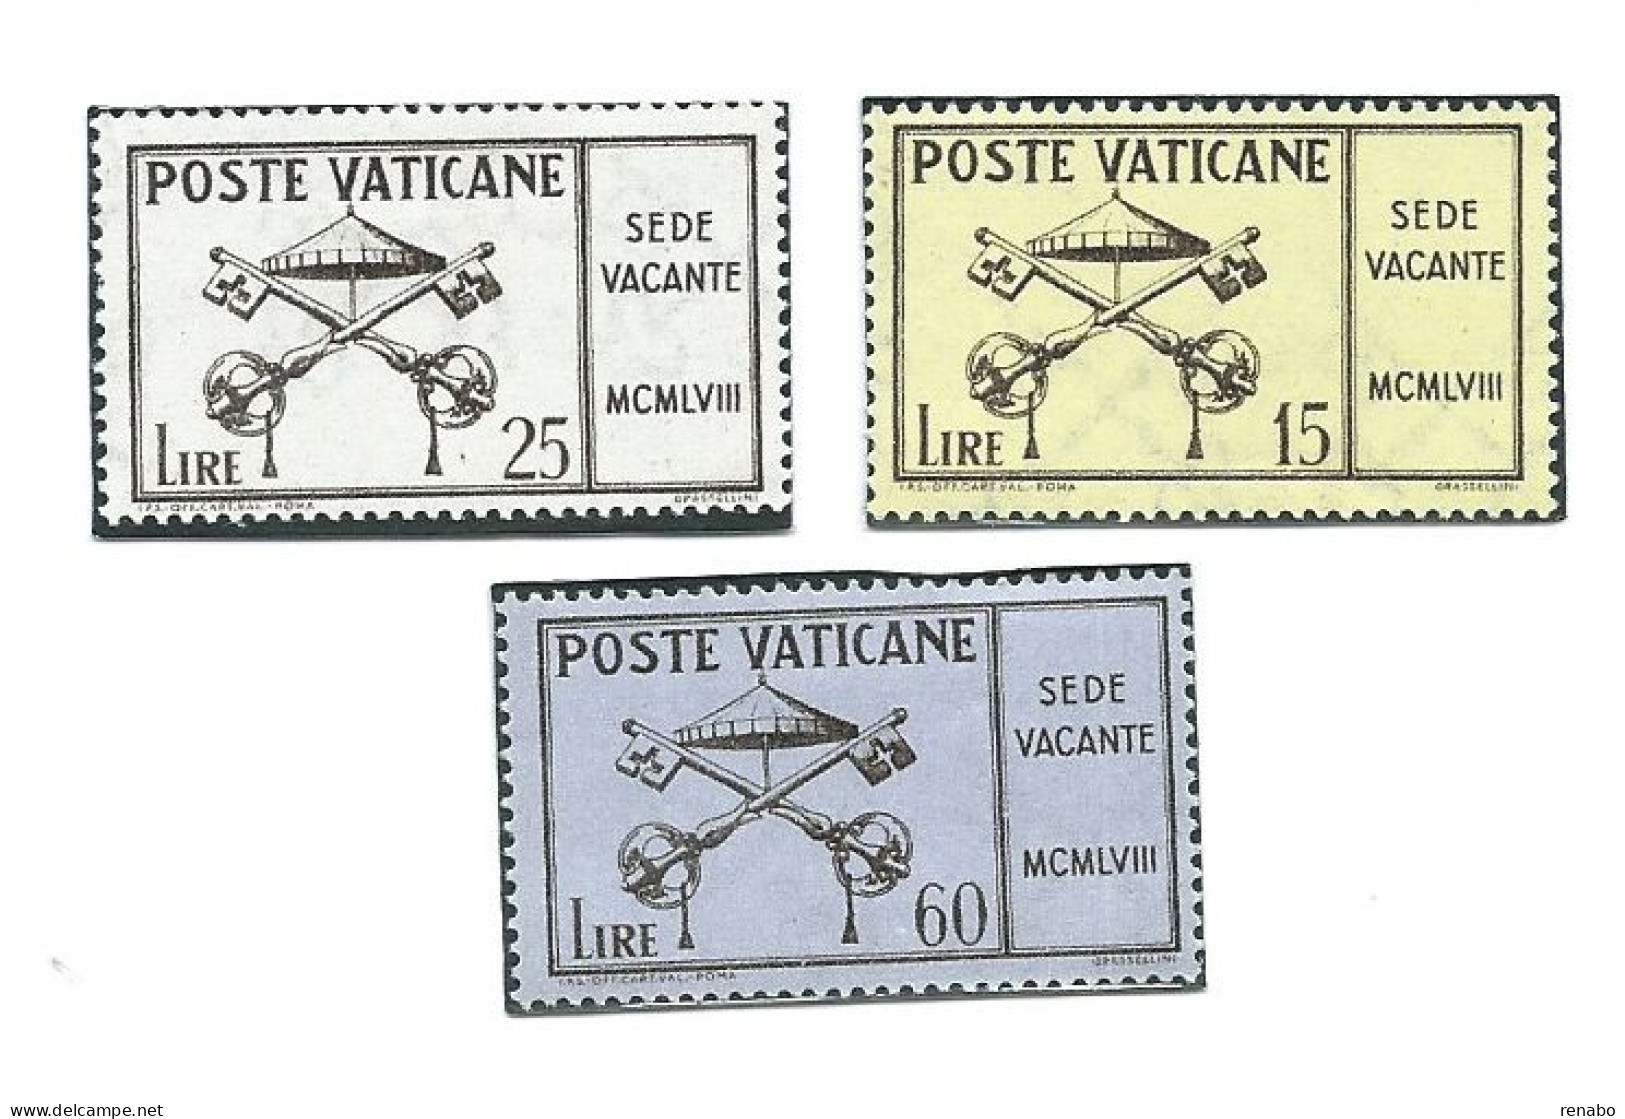 Vaticano 1958 ; Sede Vacante. Serie Completa, Nuova. - Ongebruikt